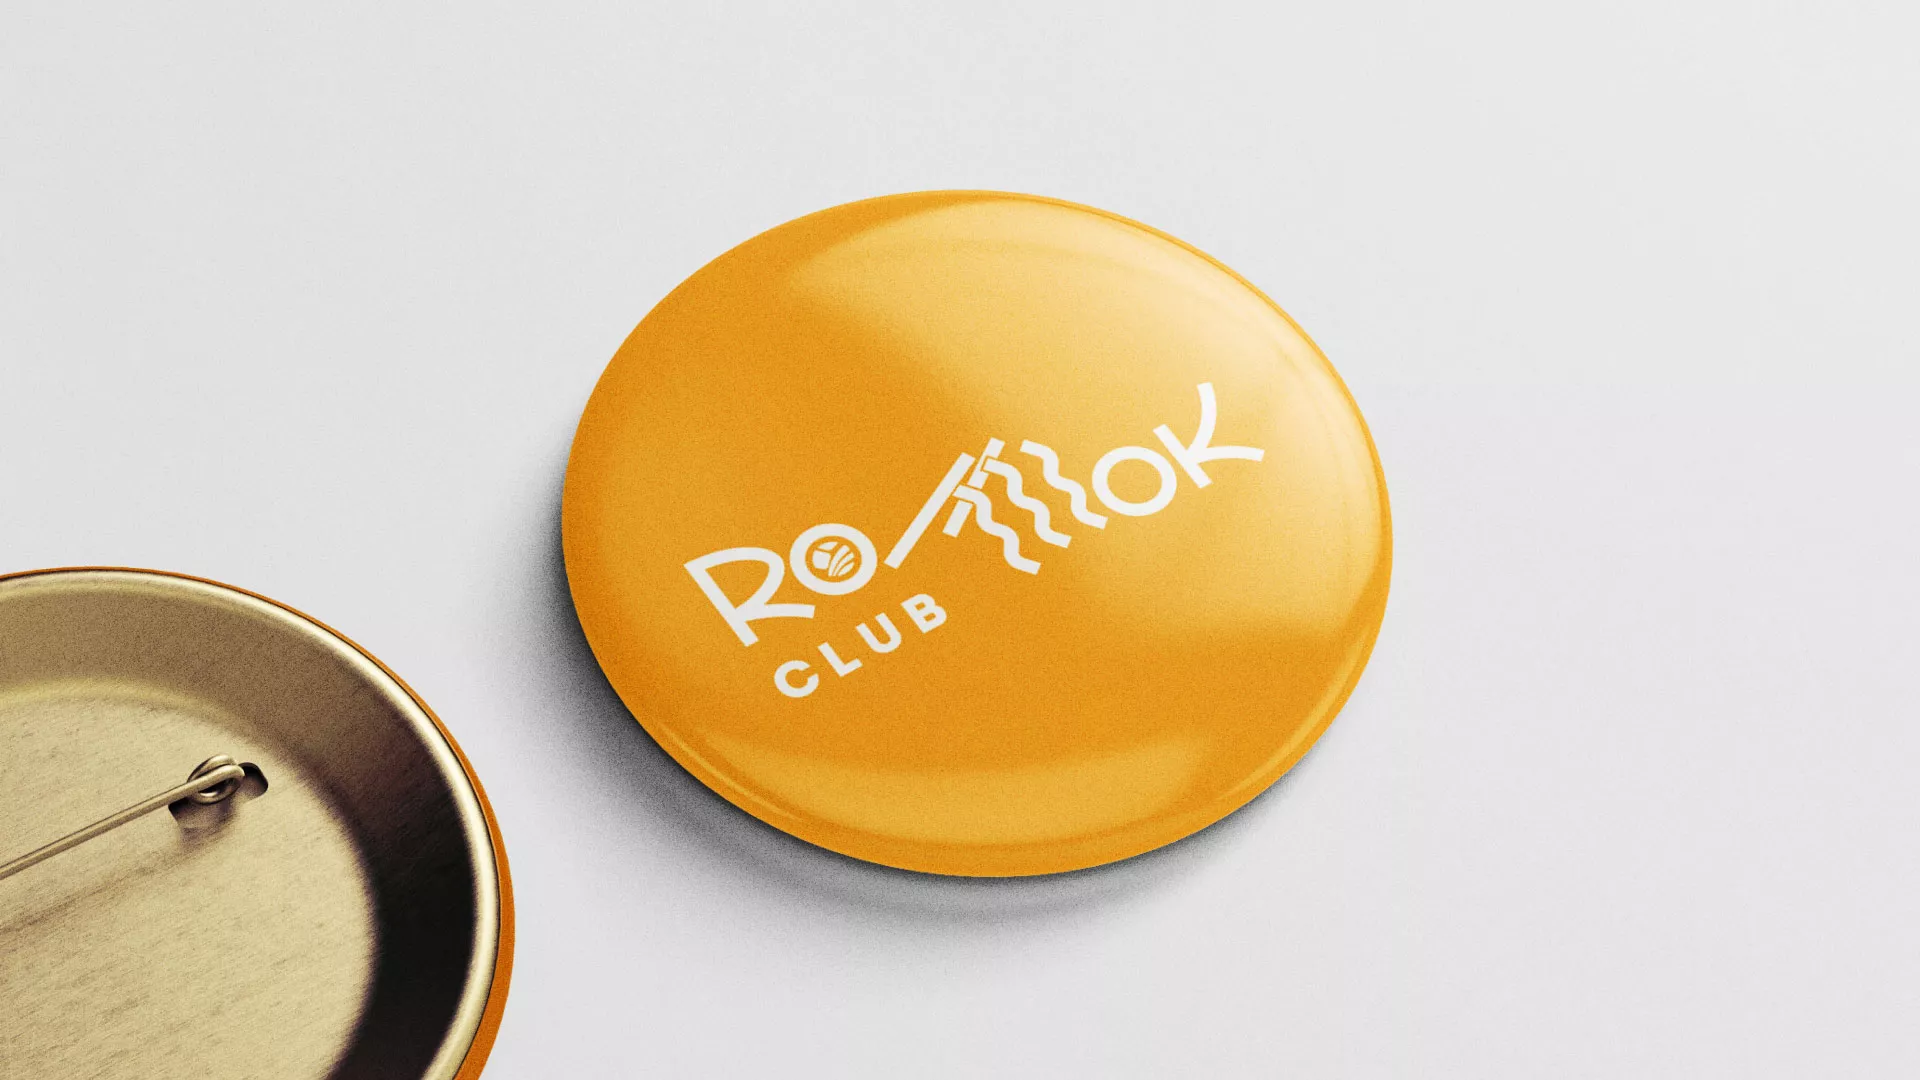 Создание логотипа суши-бара «Roll Wok Club» в Болохово